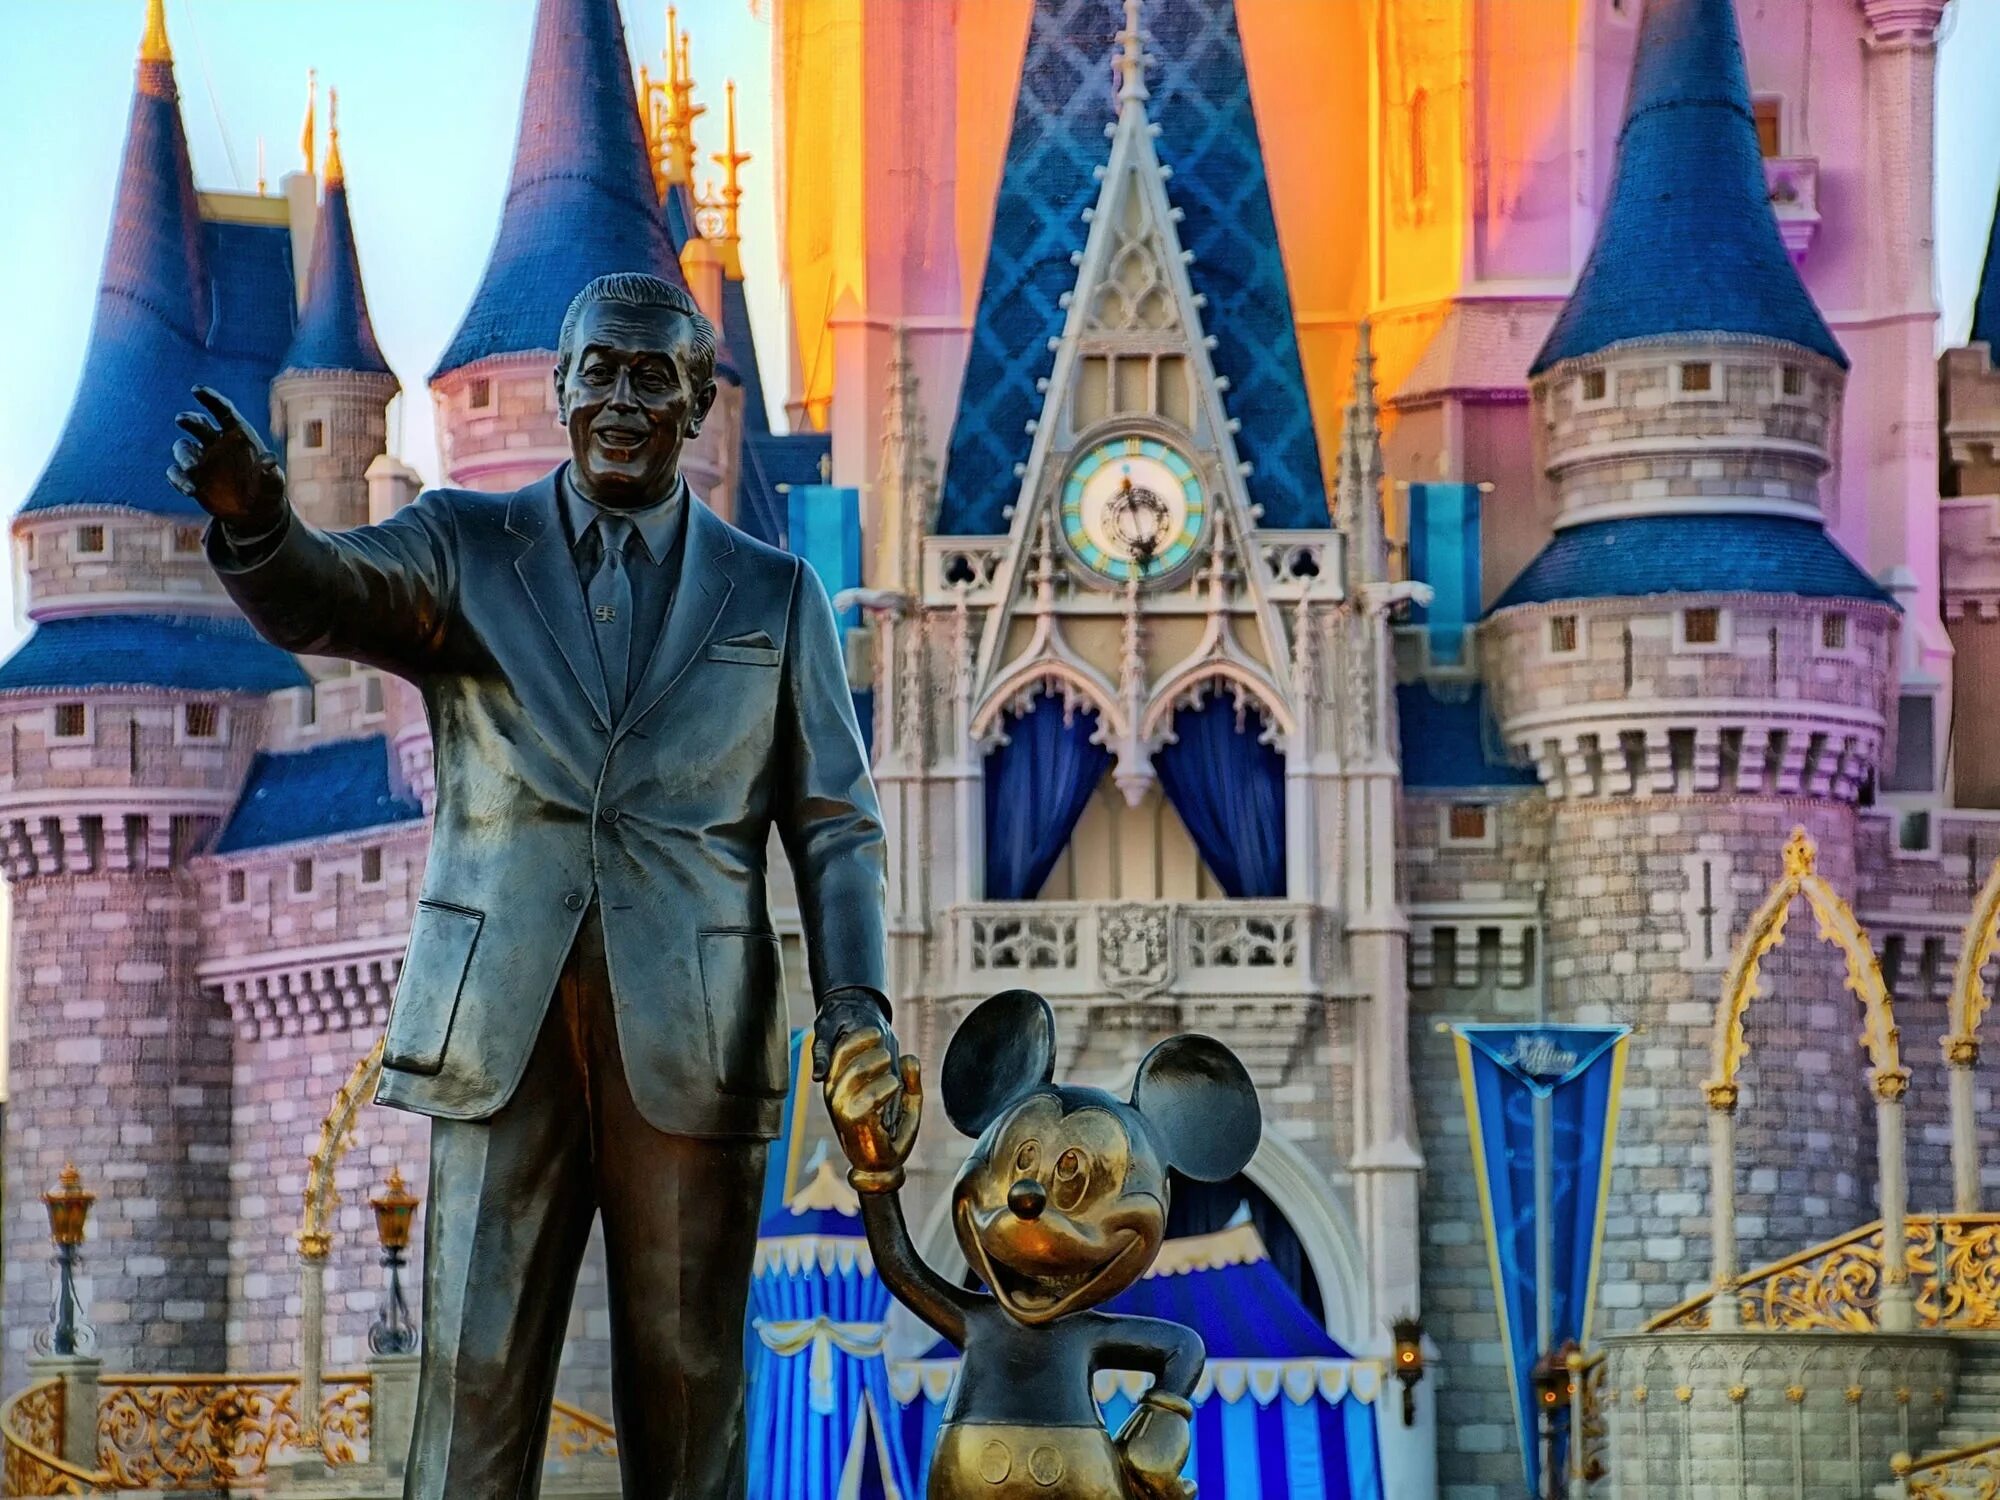 Дисней века. Walt Disney (Уолт Дисней). Уолт Дисней Диснейленд. Мир Уолта Диснея» (Walt Disney World) во Флориде. Диснейленд статуя Уолта Диснея.